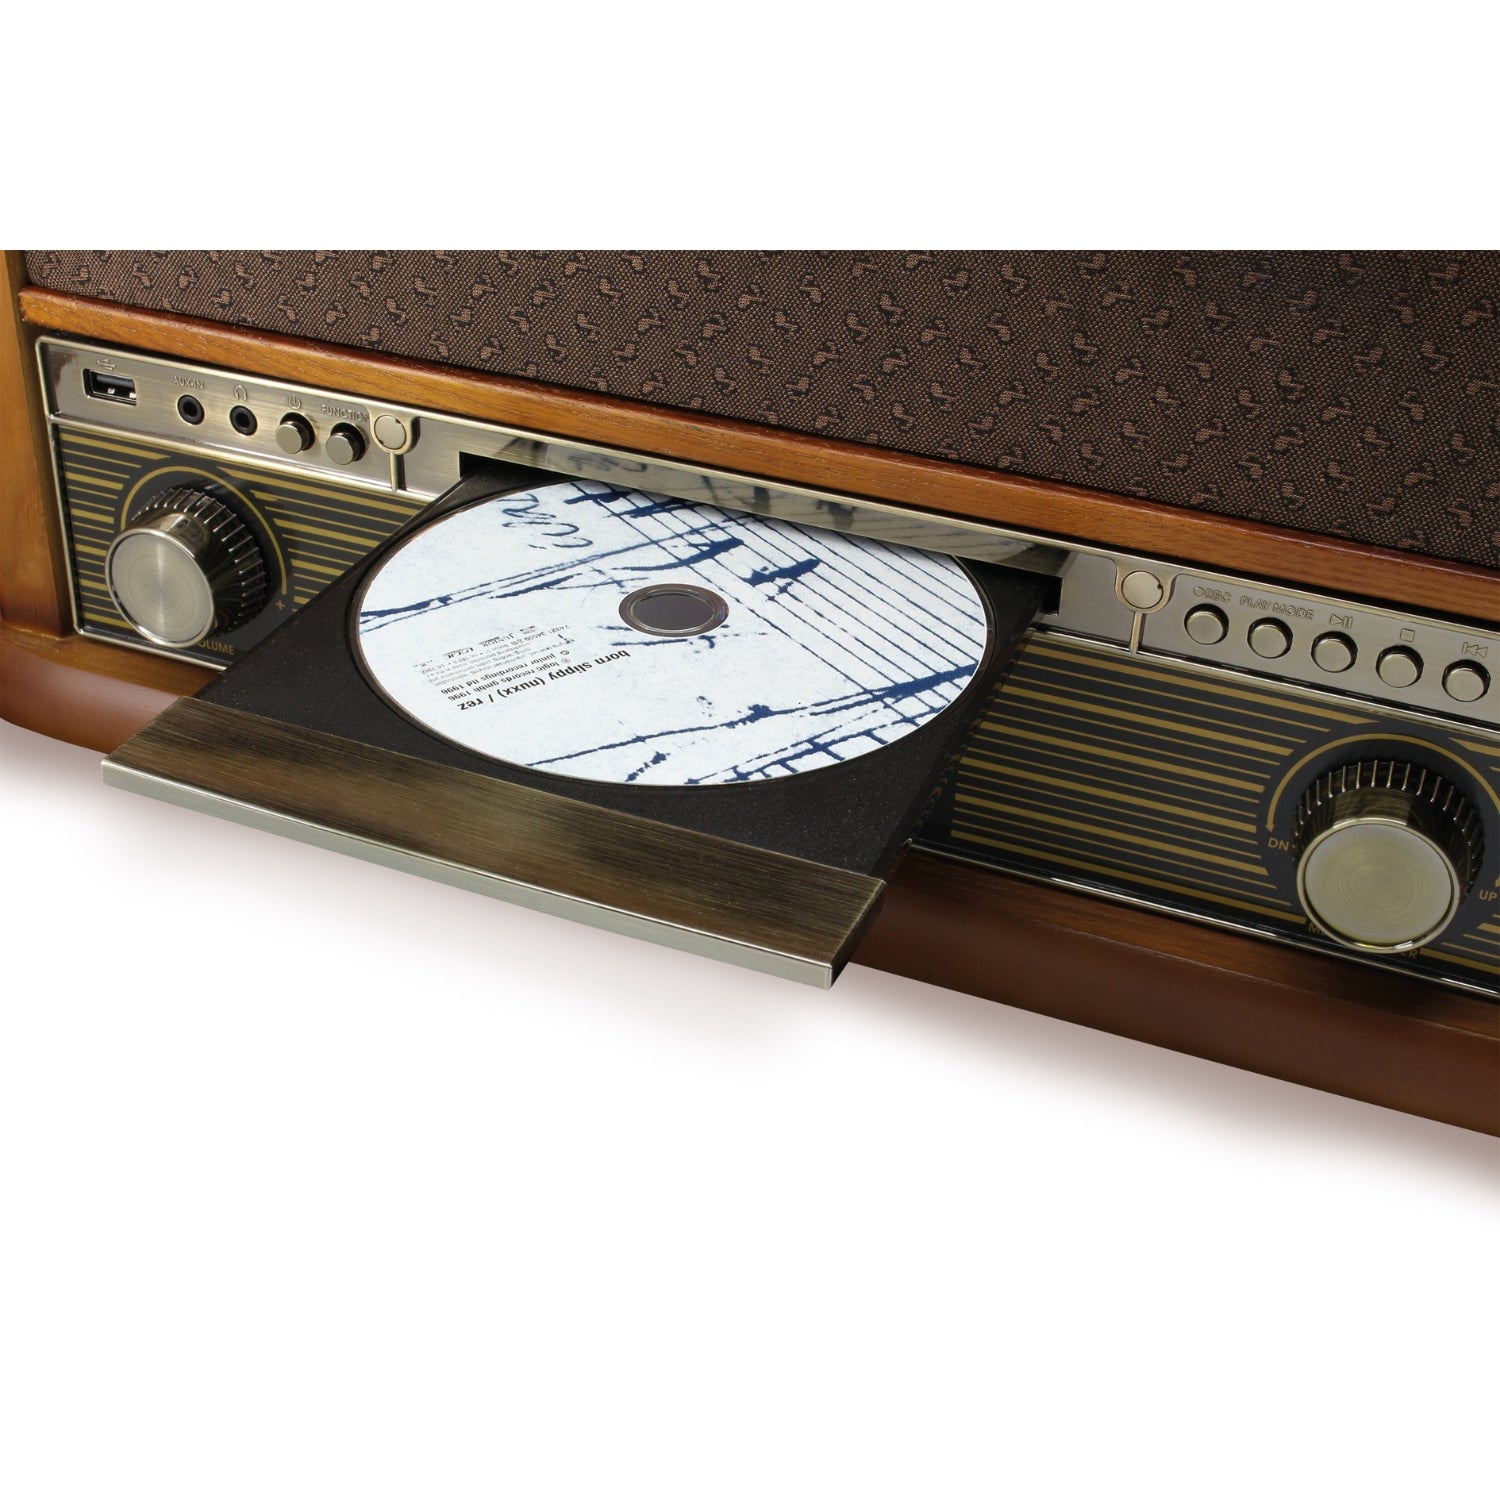 Soundmaster NR546BR radio numérique stéréo nostalgie DAB+/FM avec tourne-disque, système de lecture magnétique Audio Technica, CD/MP3, USB, cassette, Bluetooth et encodage